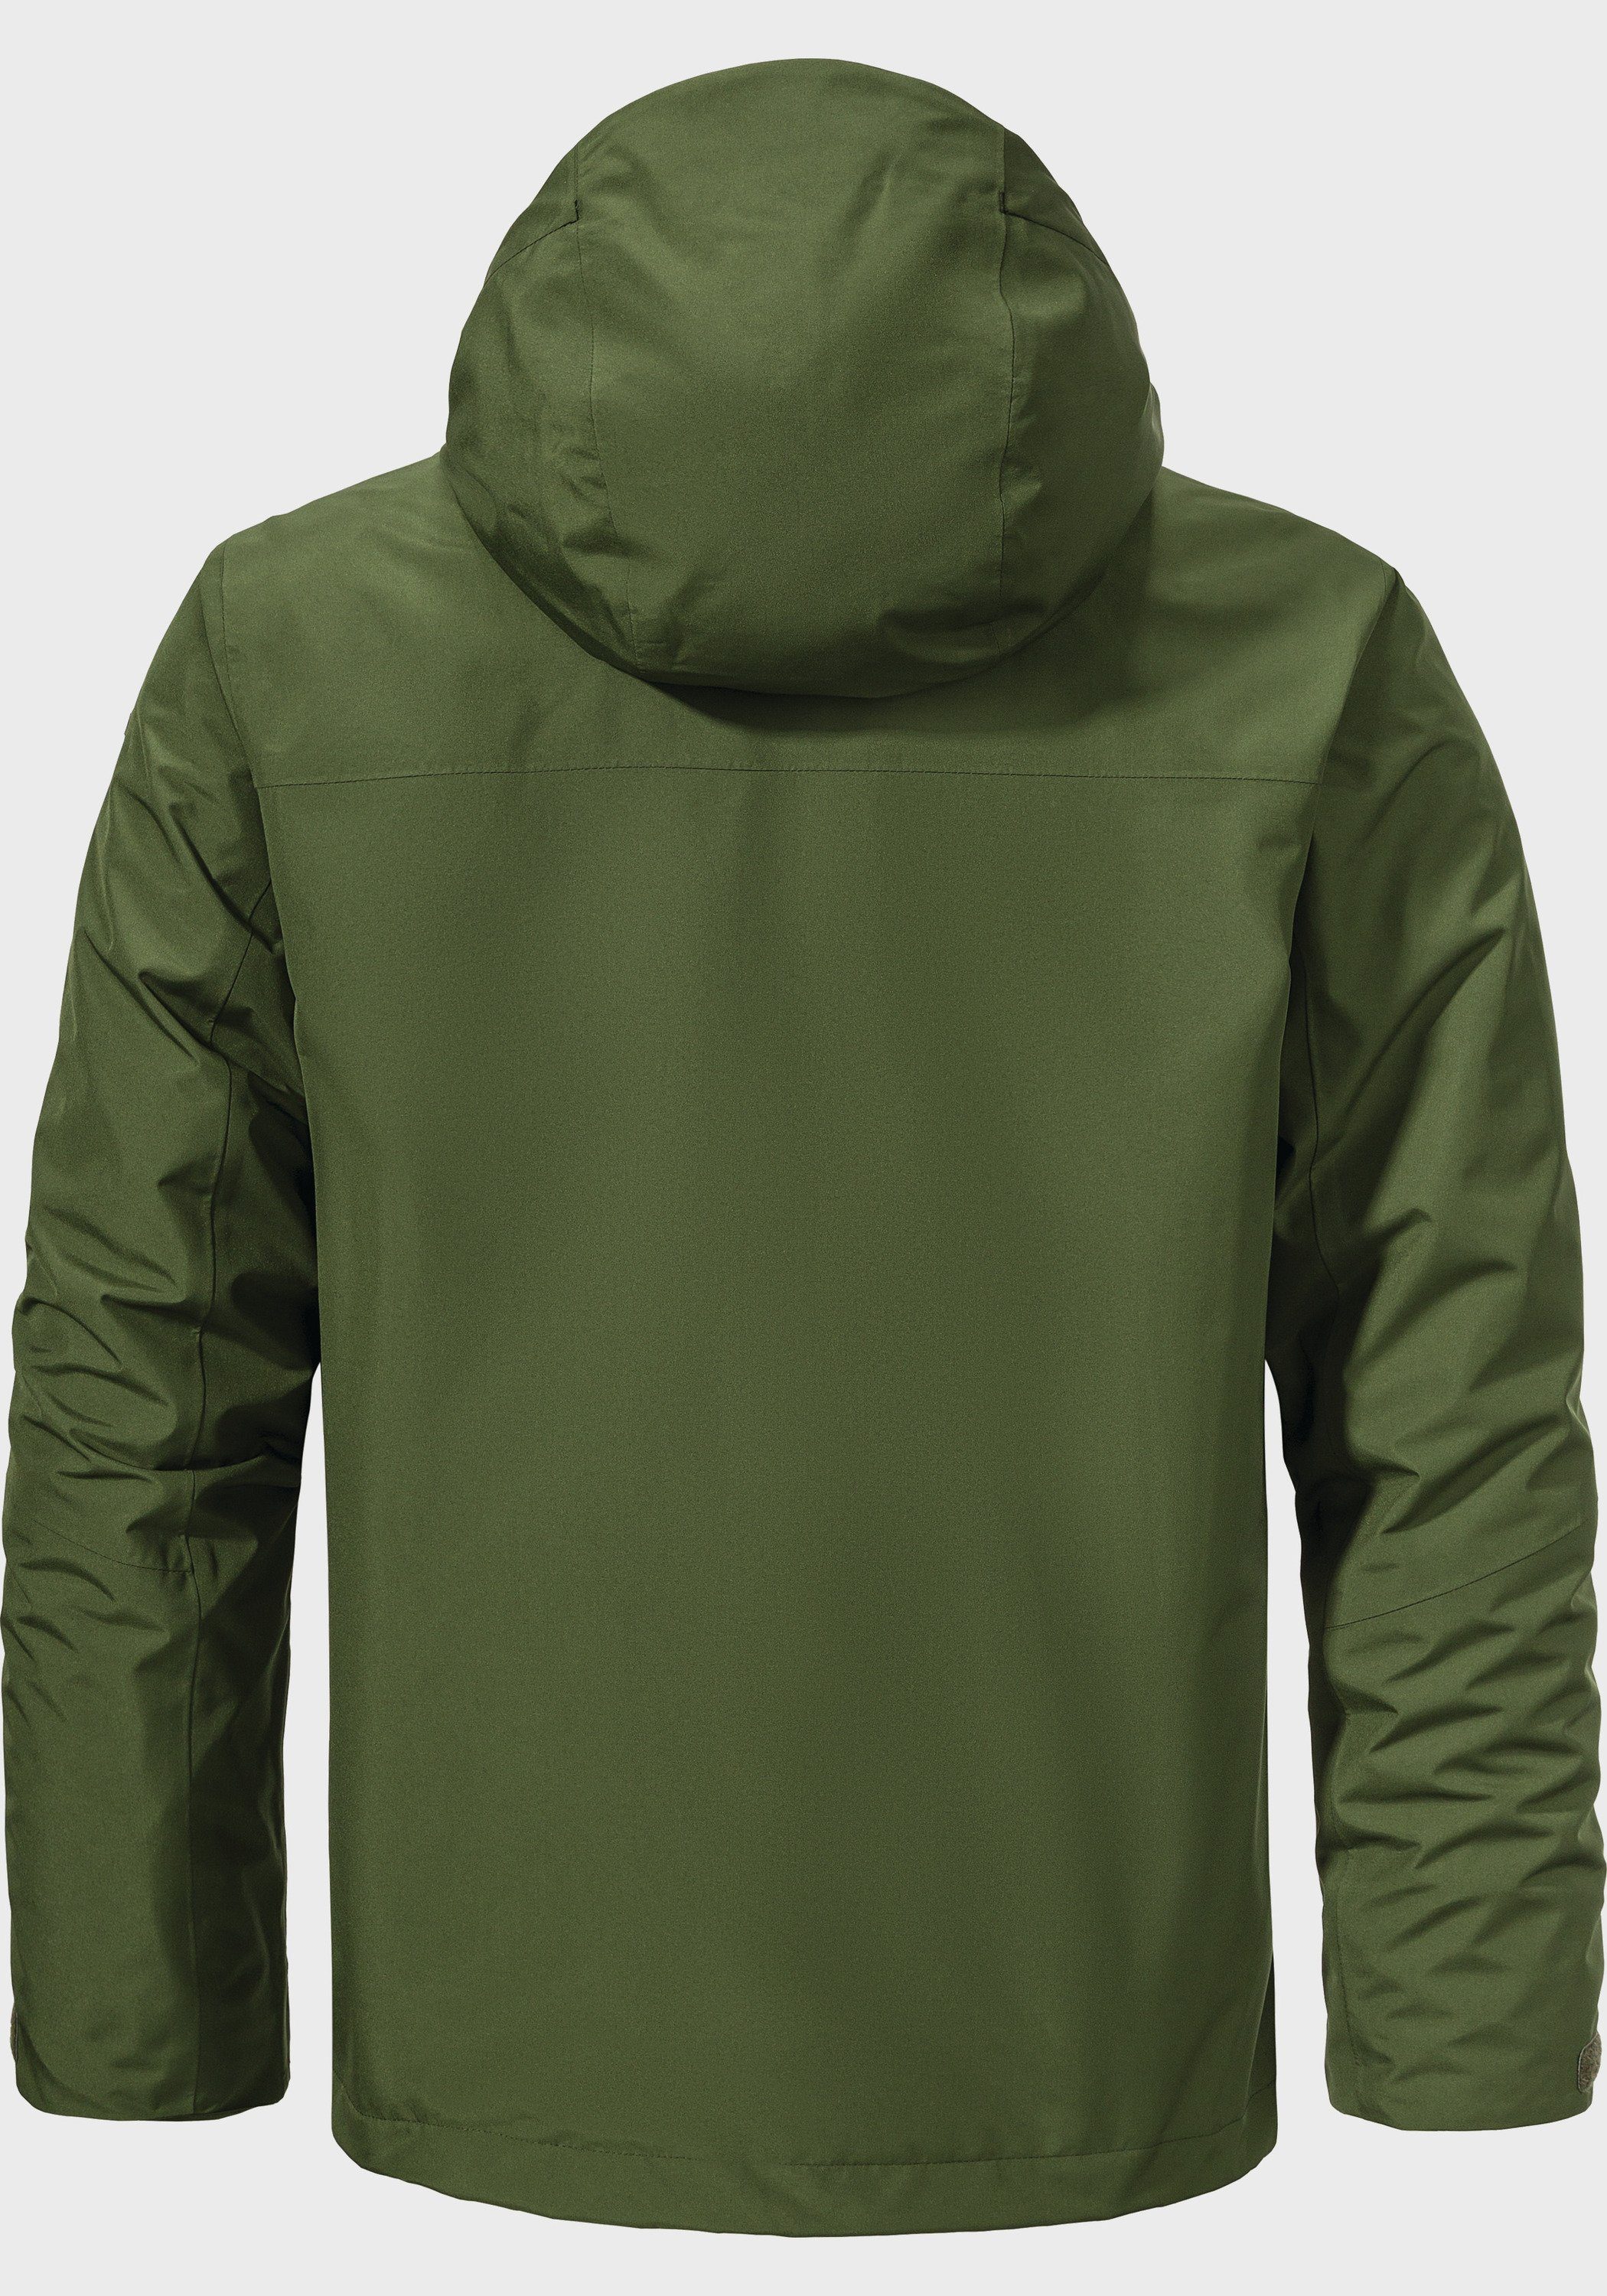 M Partinello Schöffel grün Jacket Doppeljacke 3in1